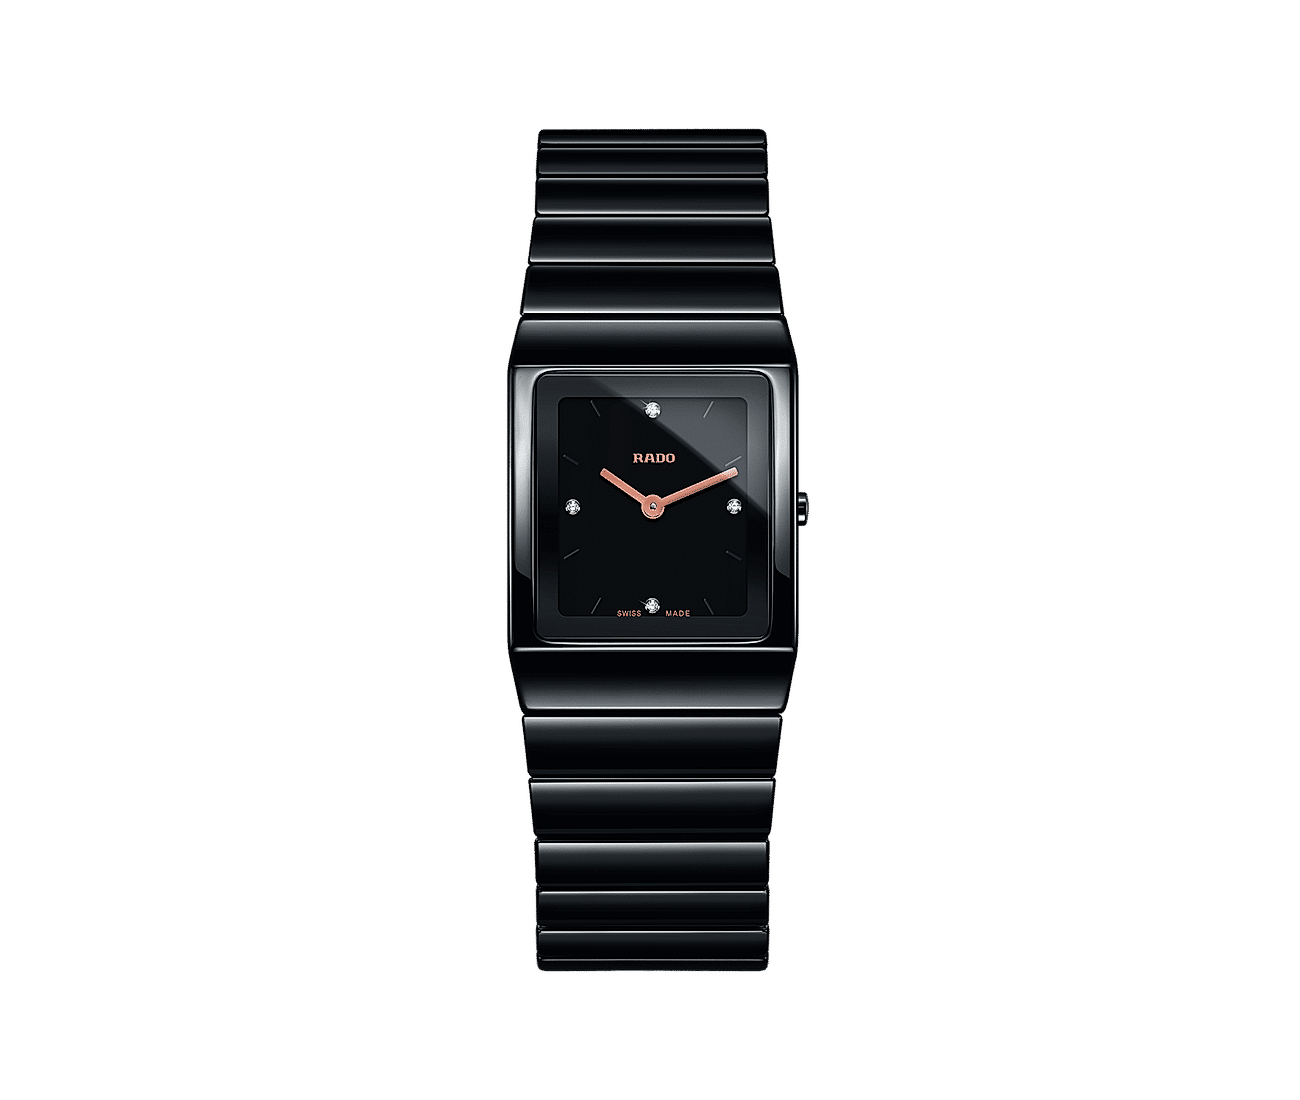 Best Mens Watches - Johnson Watches by johnsonwatchstore on DeviantArt